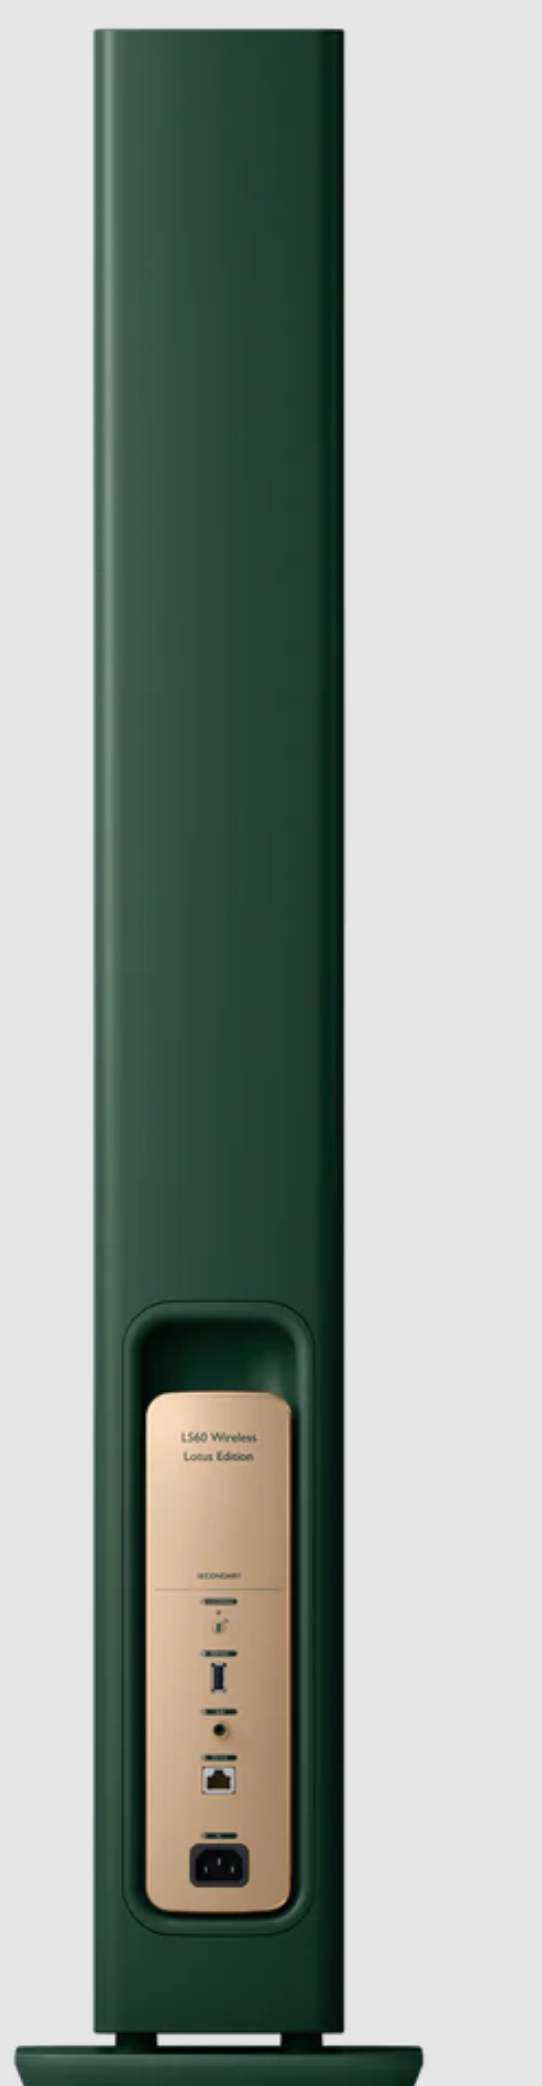 KEF LS60 Wireless Floorstanding Speakers Speakers Lotus Edition. Individual speaker back image